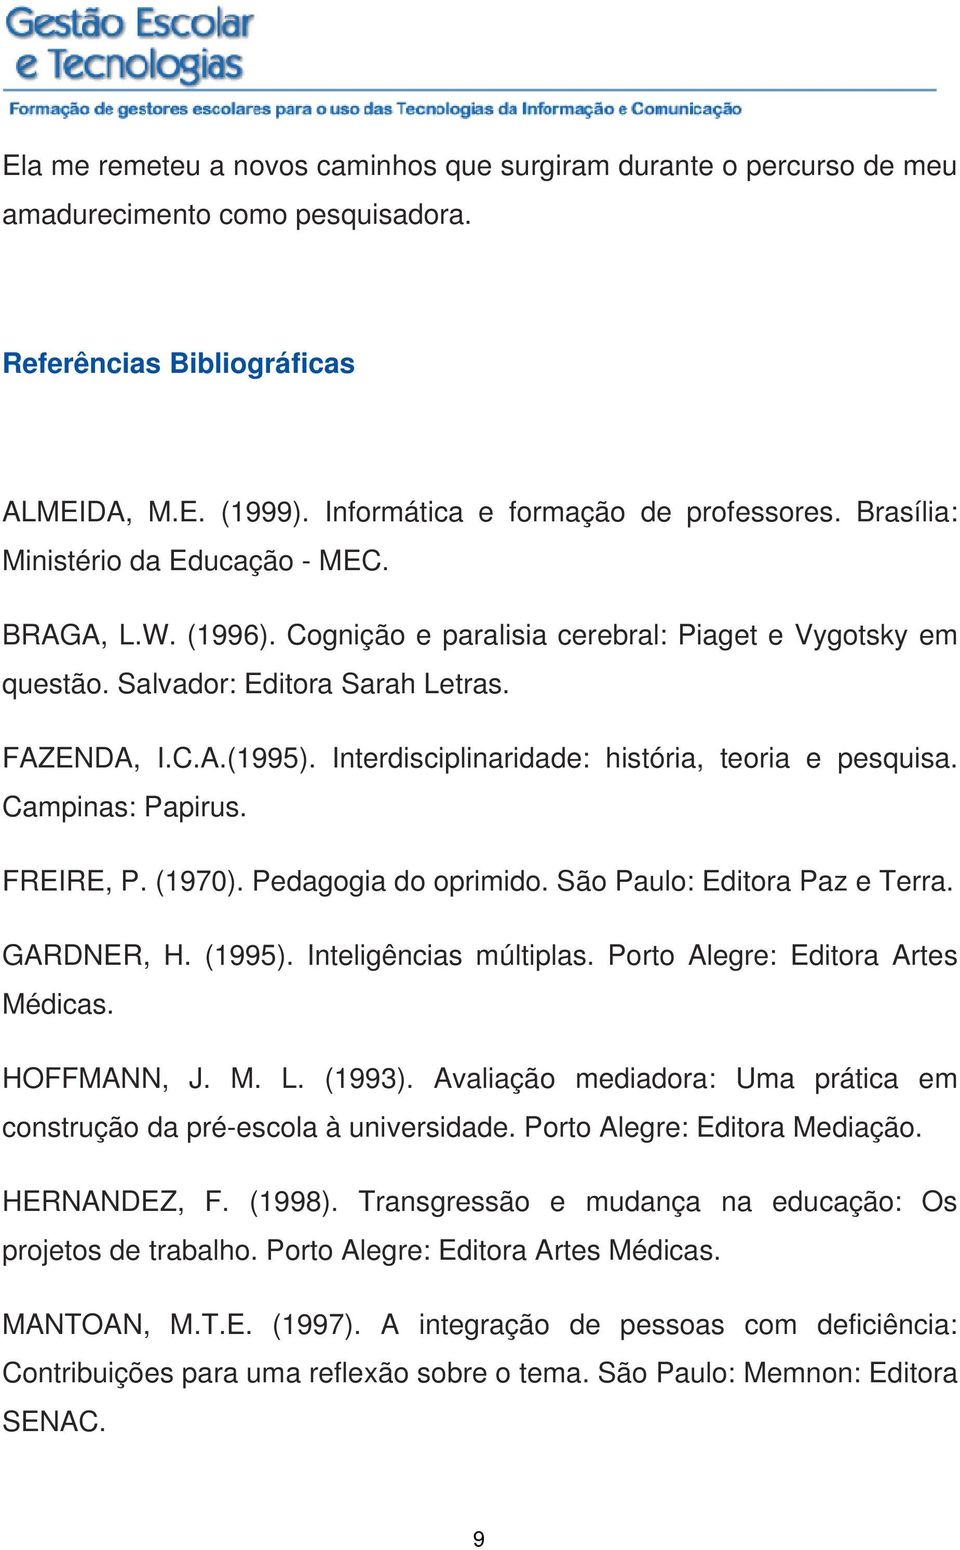 Interdisciplinaridade: história, teoria e pesquisa. Campinas: Papirus. FREIRE, P. (1970). Pedagogia do oprimido. São Paulo: Editora Paz e Terra. GARDNER, H. (1995). Inteligências múltiplas.